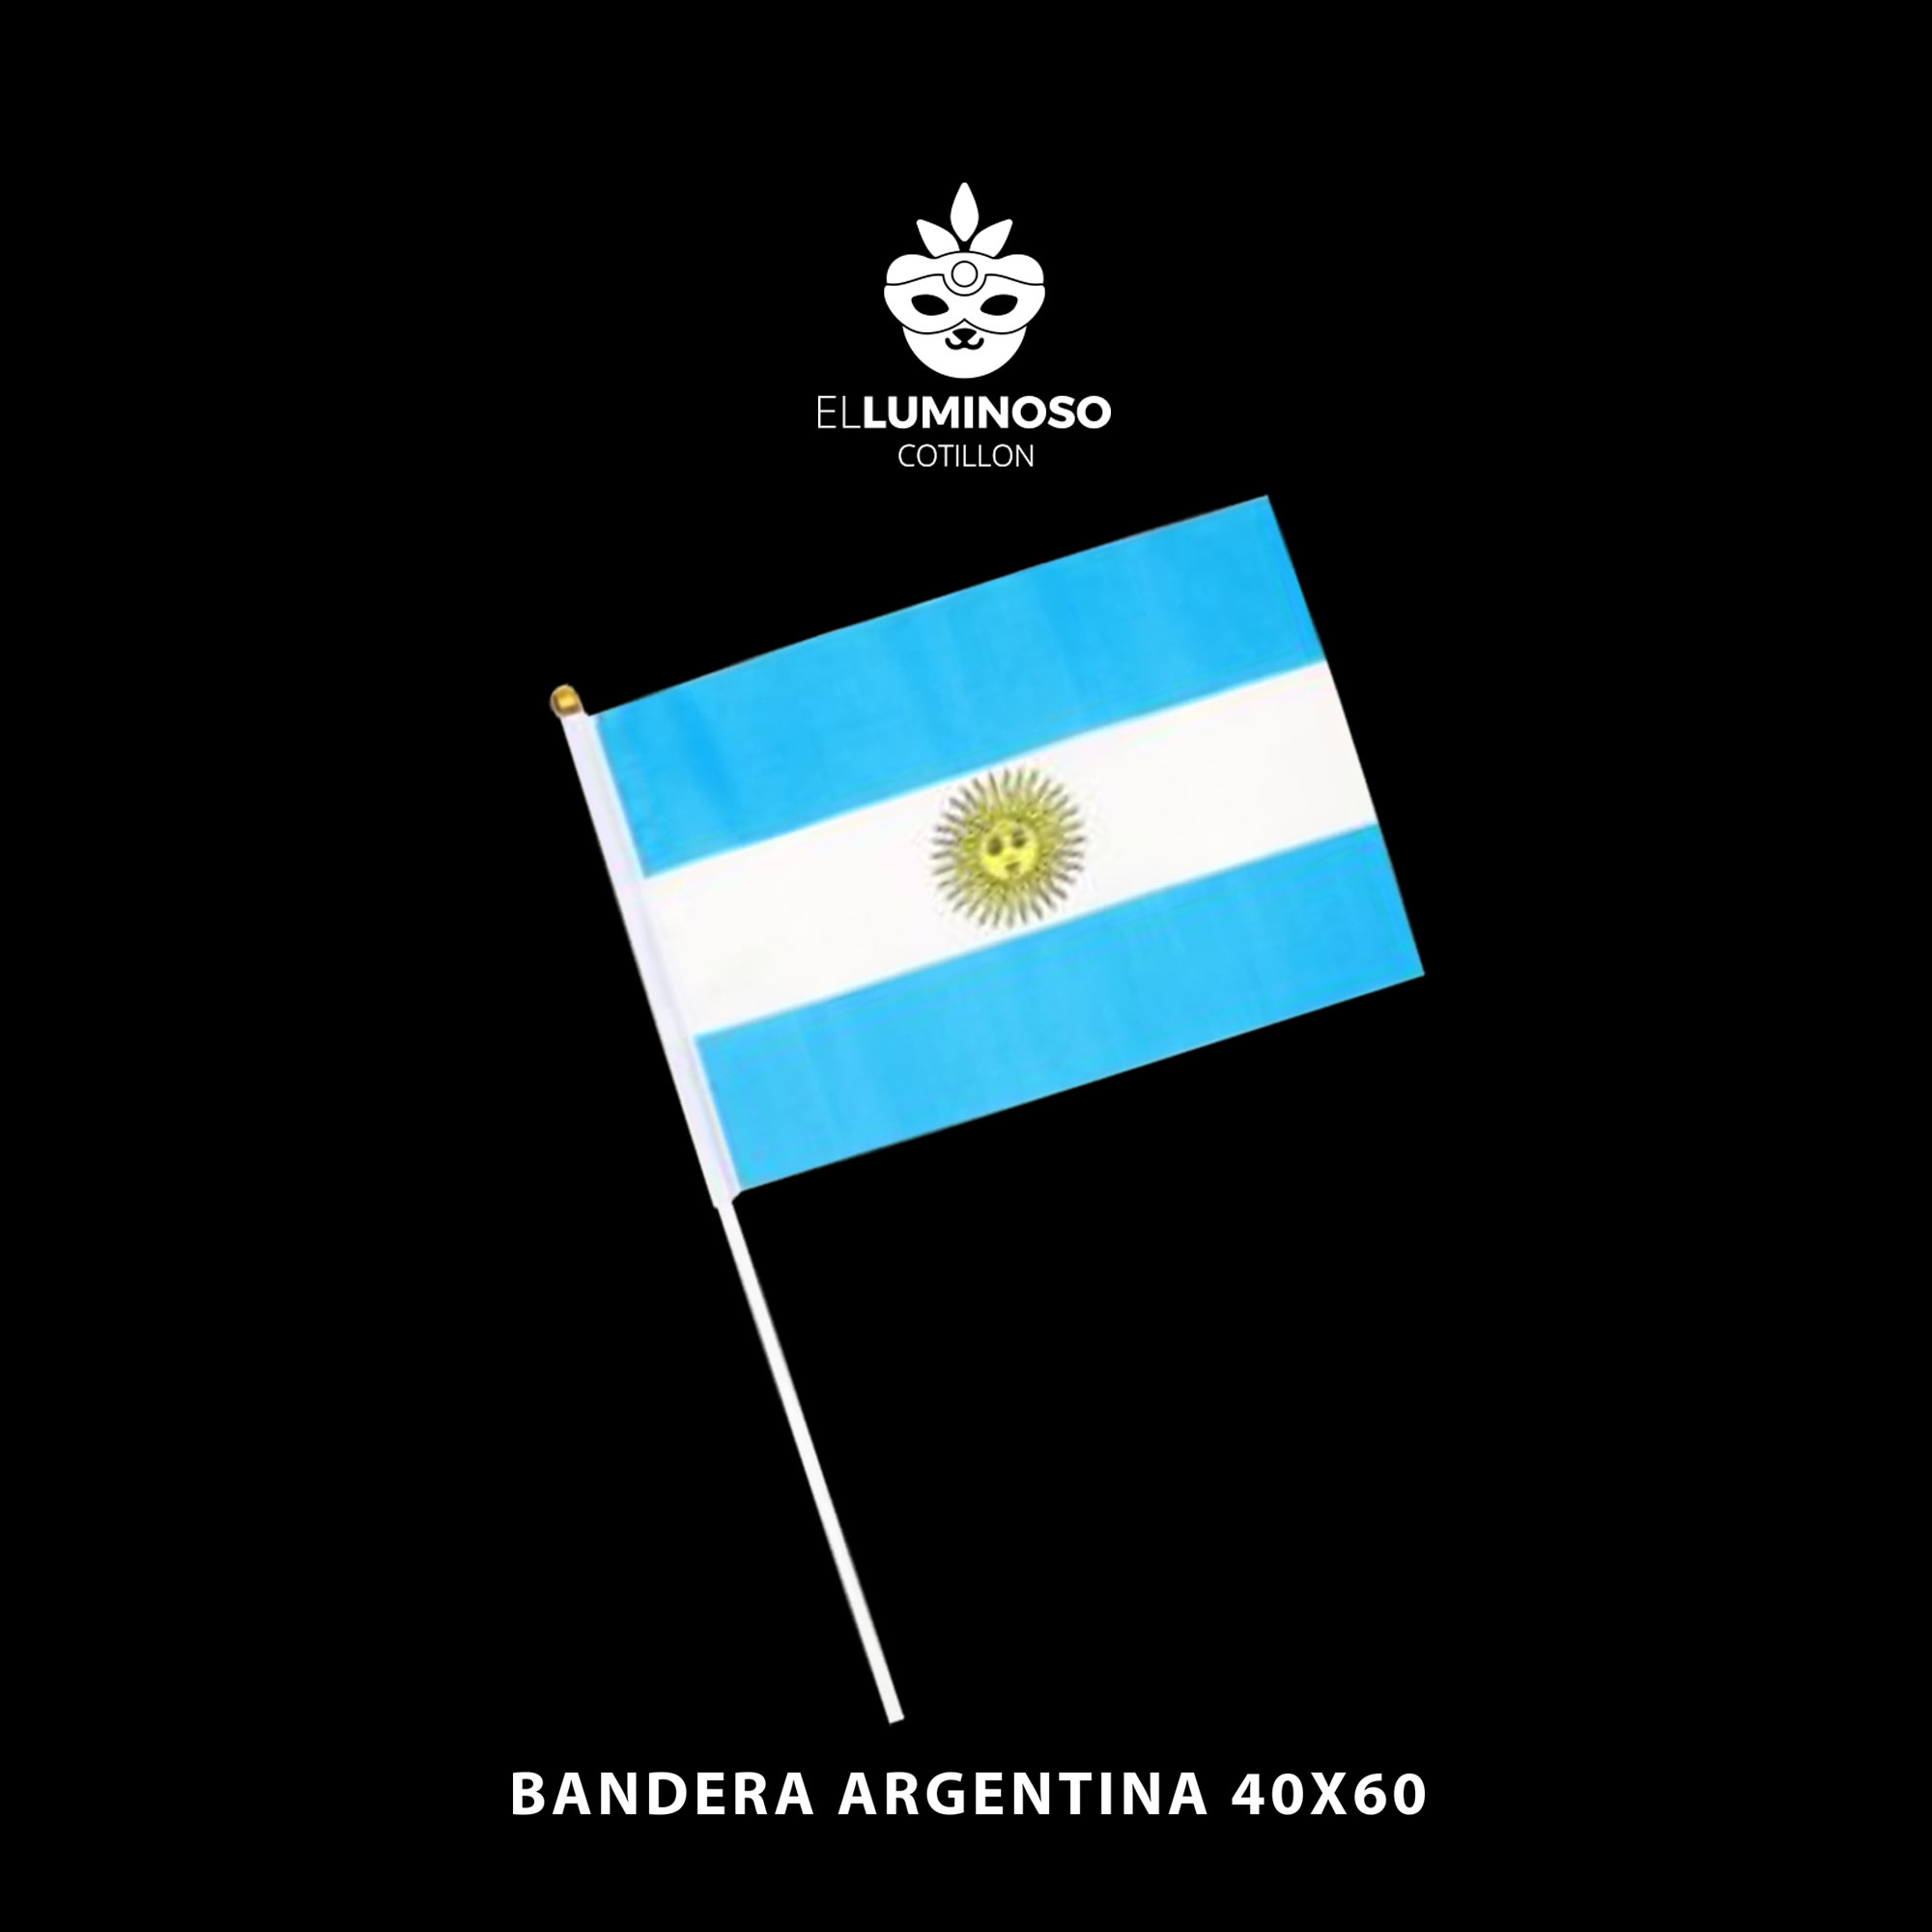 BANDERA ARGENTINA 40X60